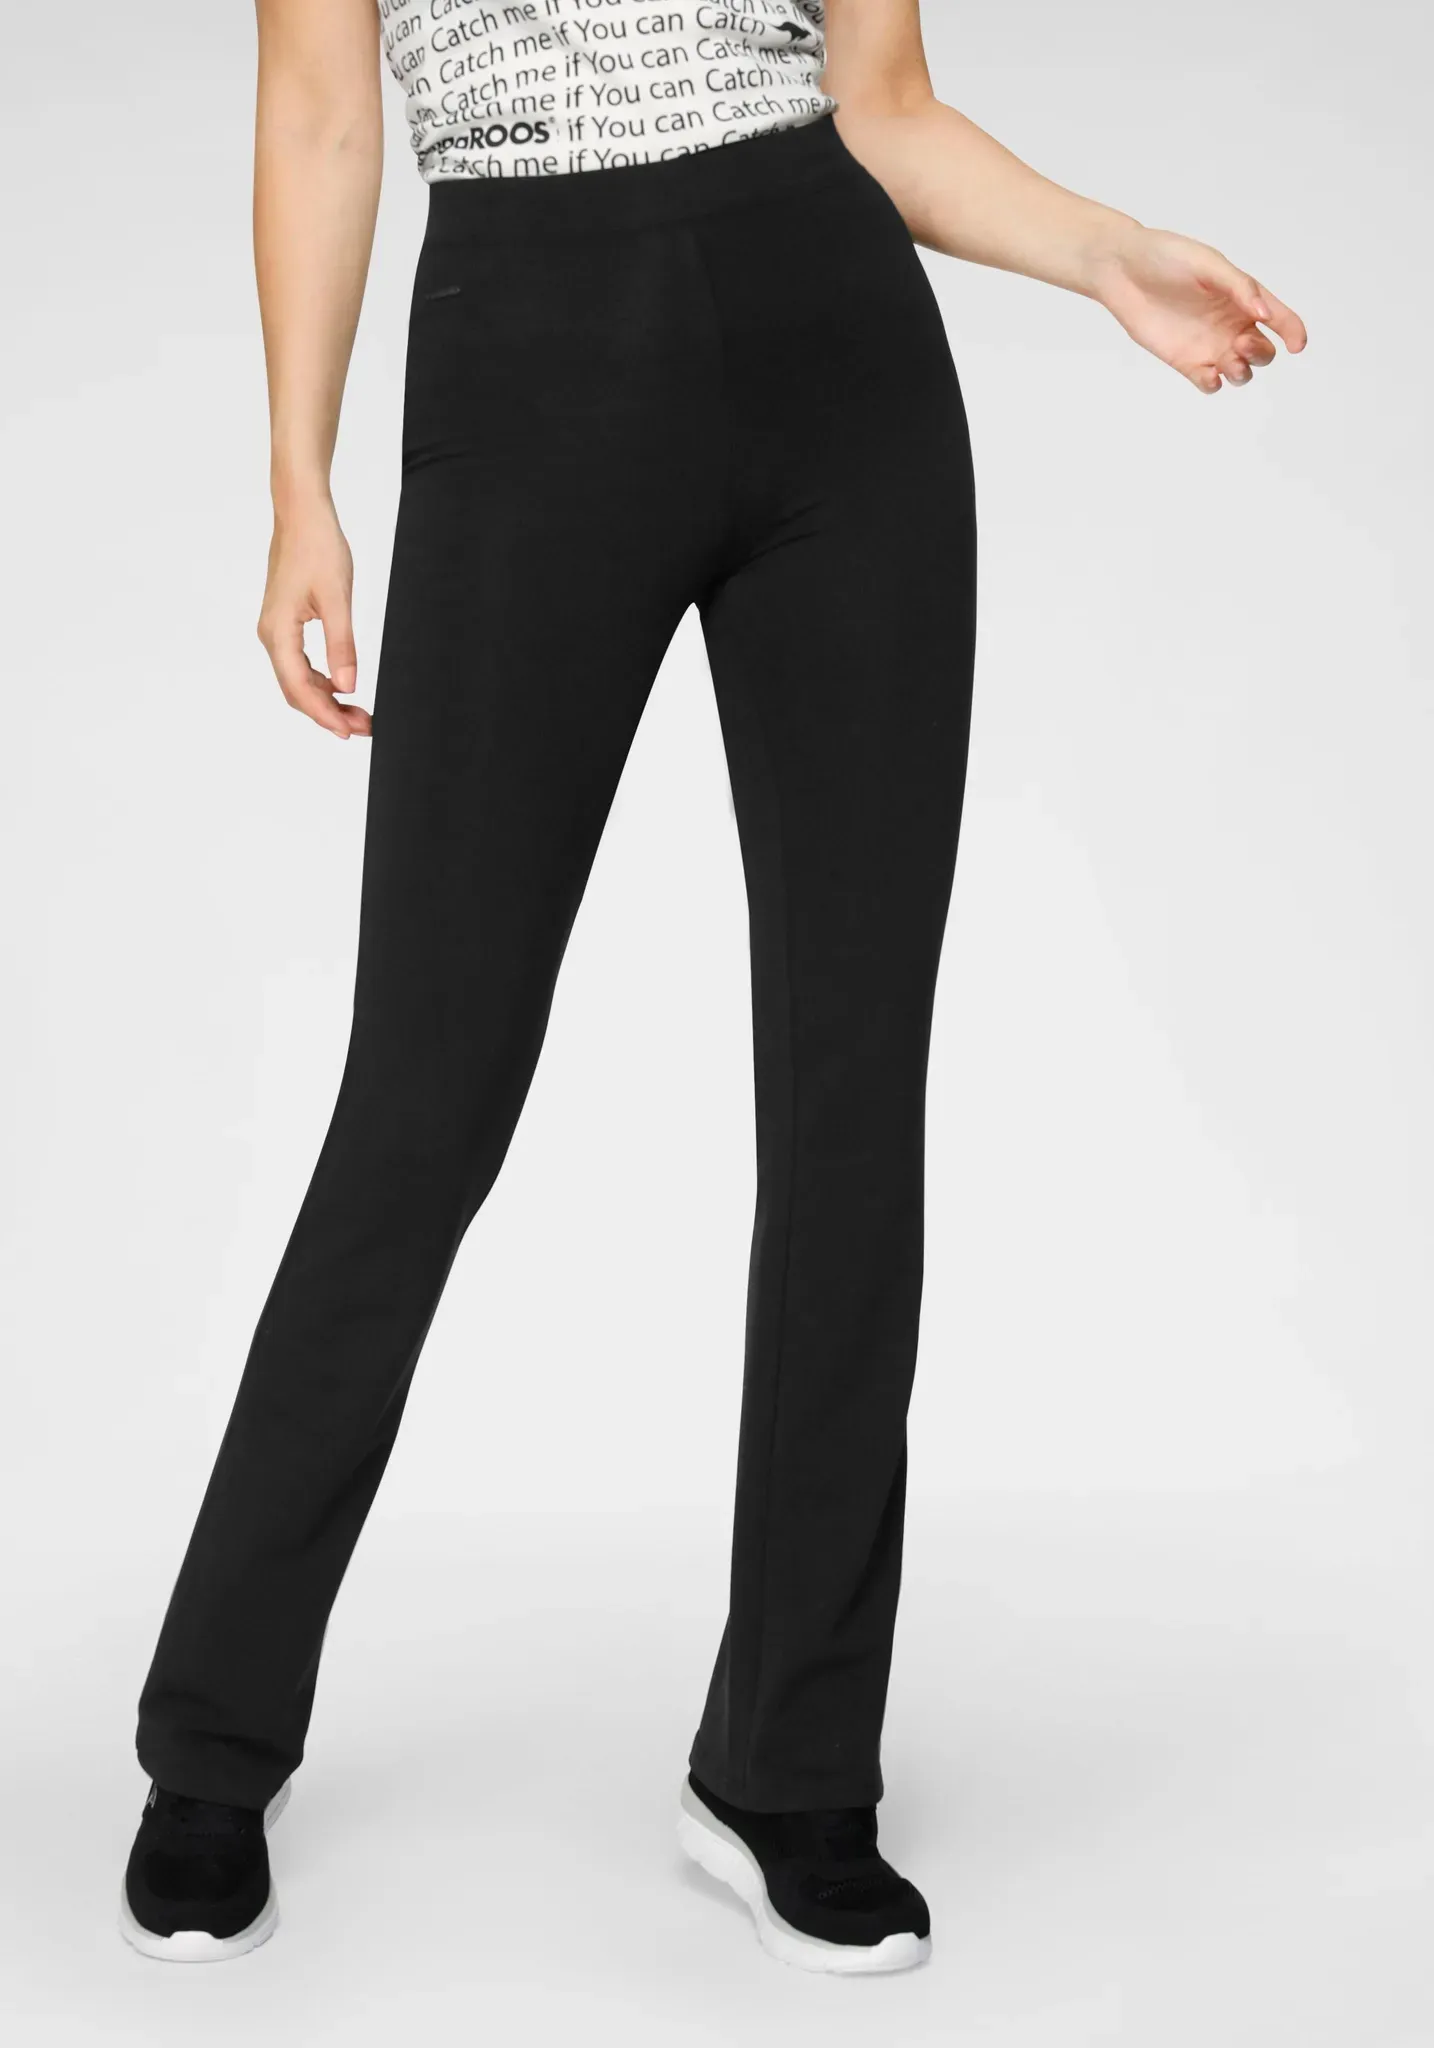 Jazzpants KANGAROOS Gr. 46, N-Gr, schwarz Damen Hosen Ausgestellte mit hohem Stretch-Anteil sitzt wie eine zweite Haut